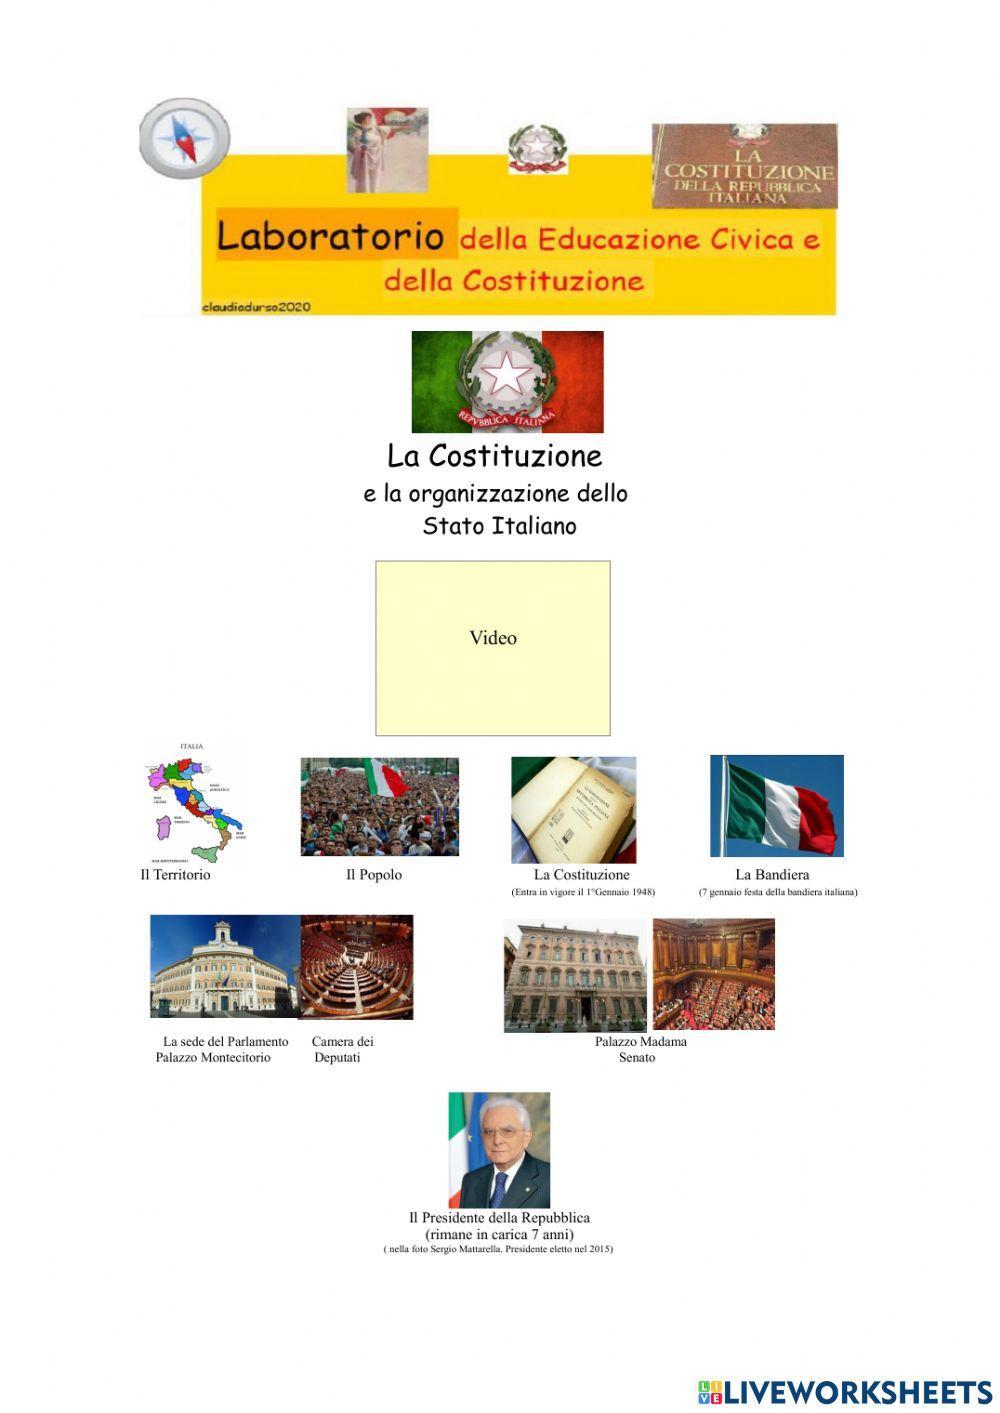 La Costituzione e la organizzazione dello Stato  della Repubblica Italiana